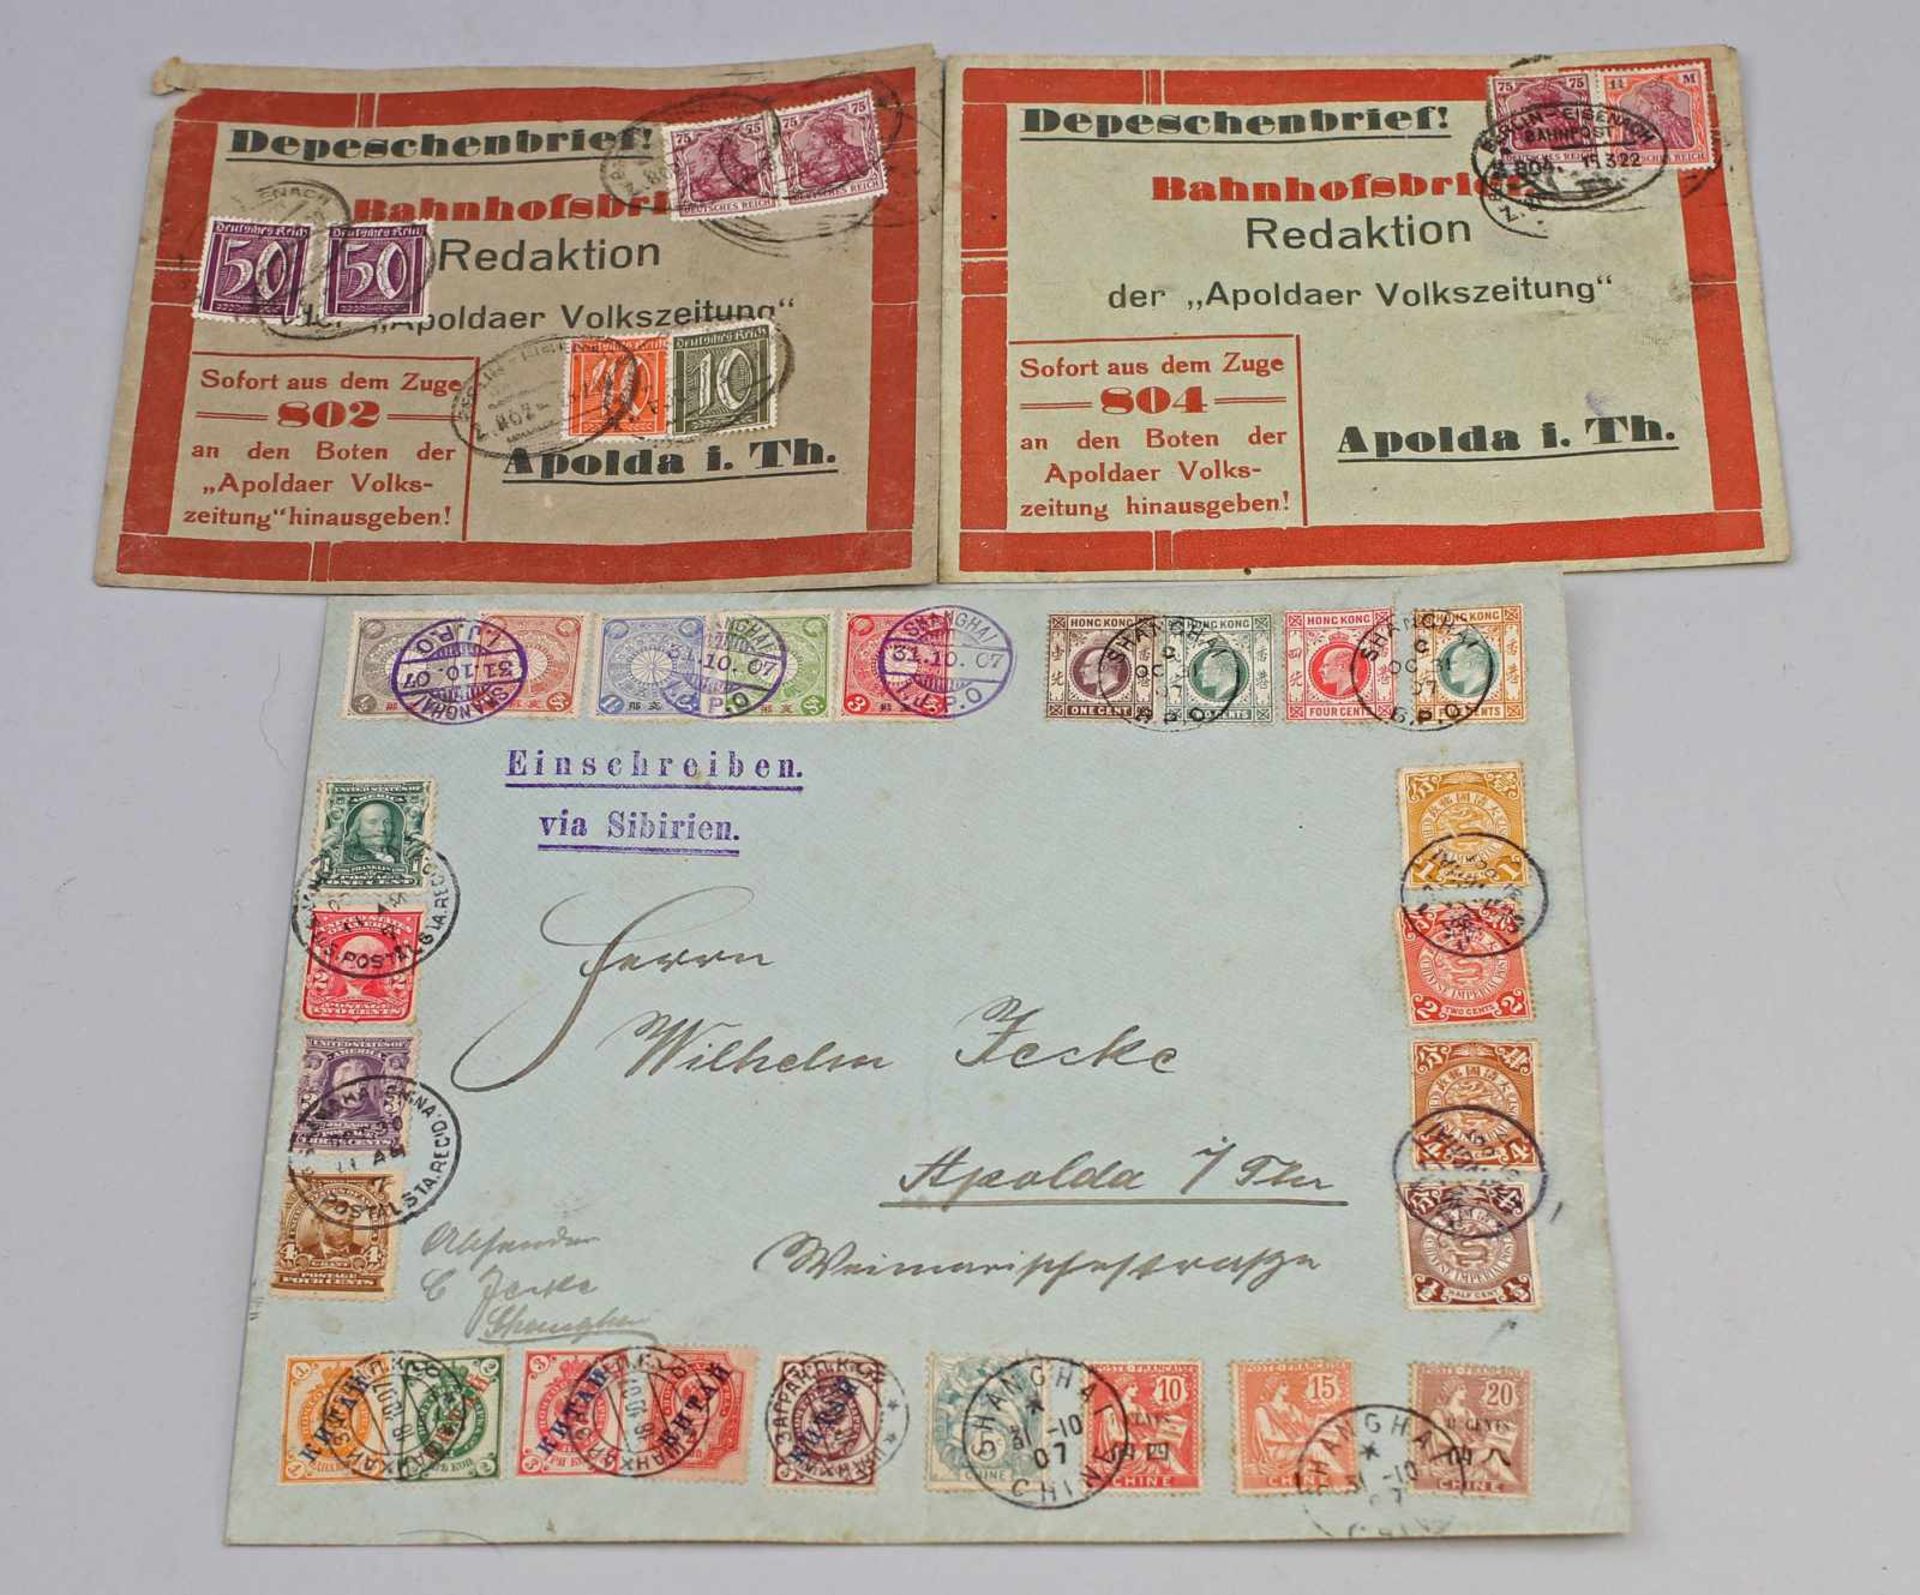 Briefmarken/ Einschreiben 1907 Shanghai Apolda u.a. Einschreiben via Sibirien von Shanghai/China